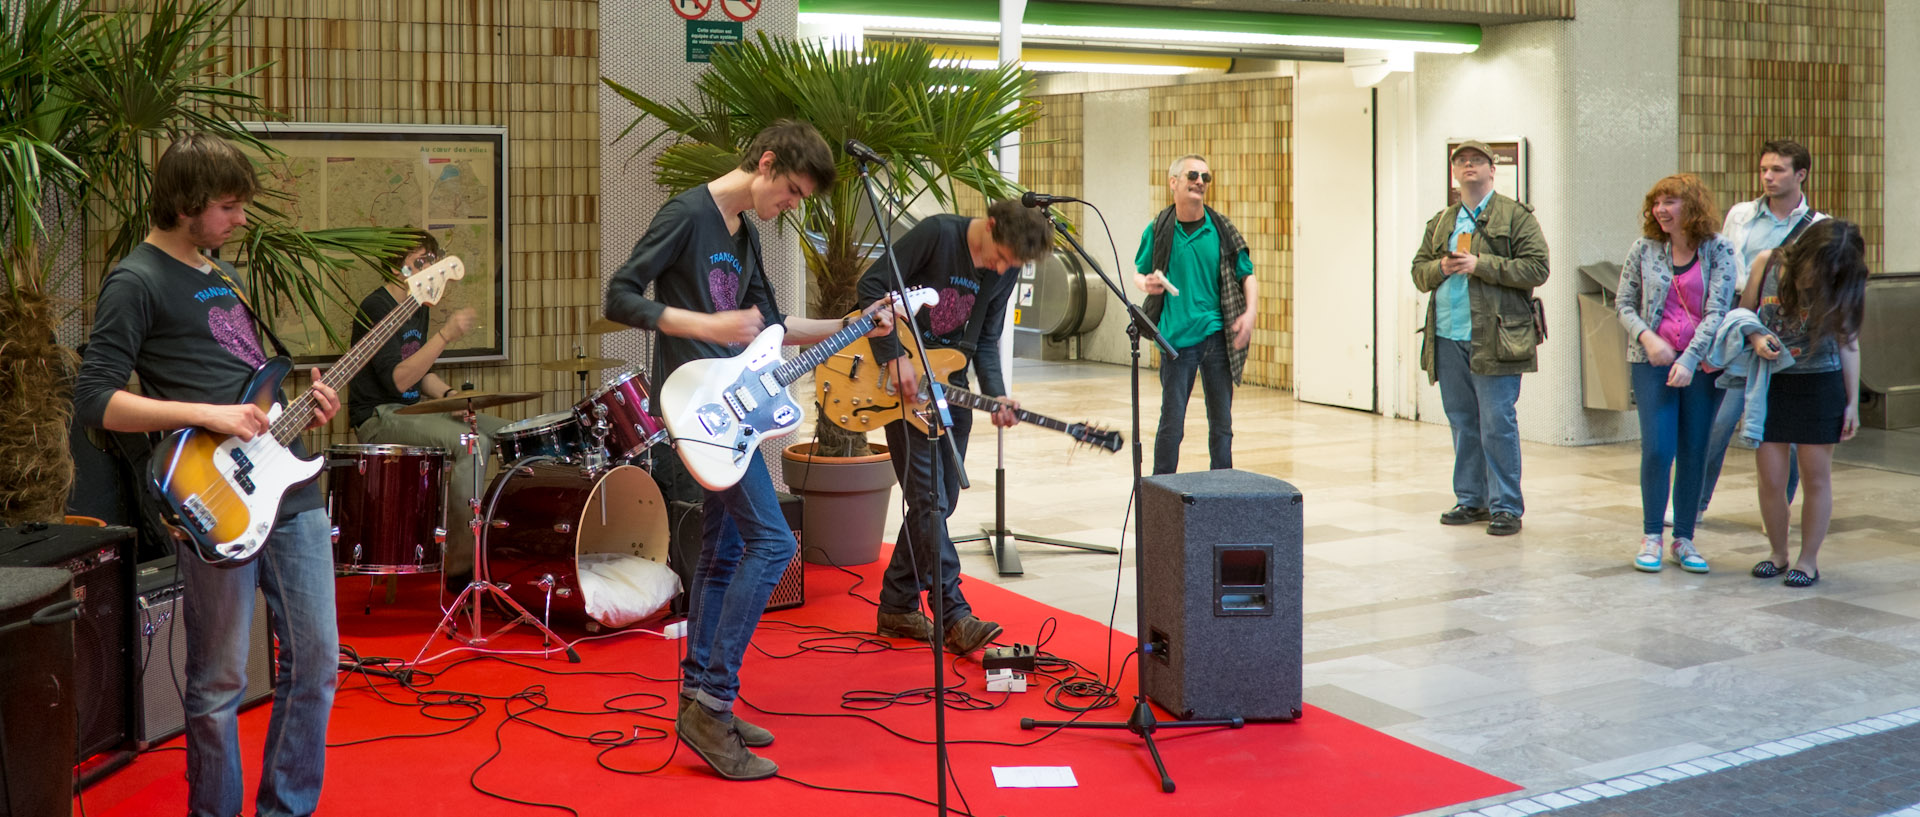 Groupe de rock dans la station de métro Rihour, pendant la Fête de la musique, à Lille.